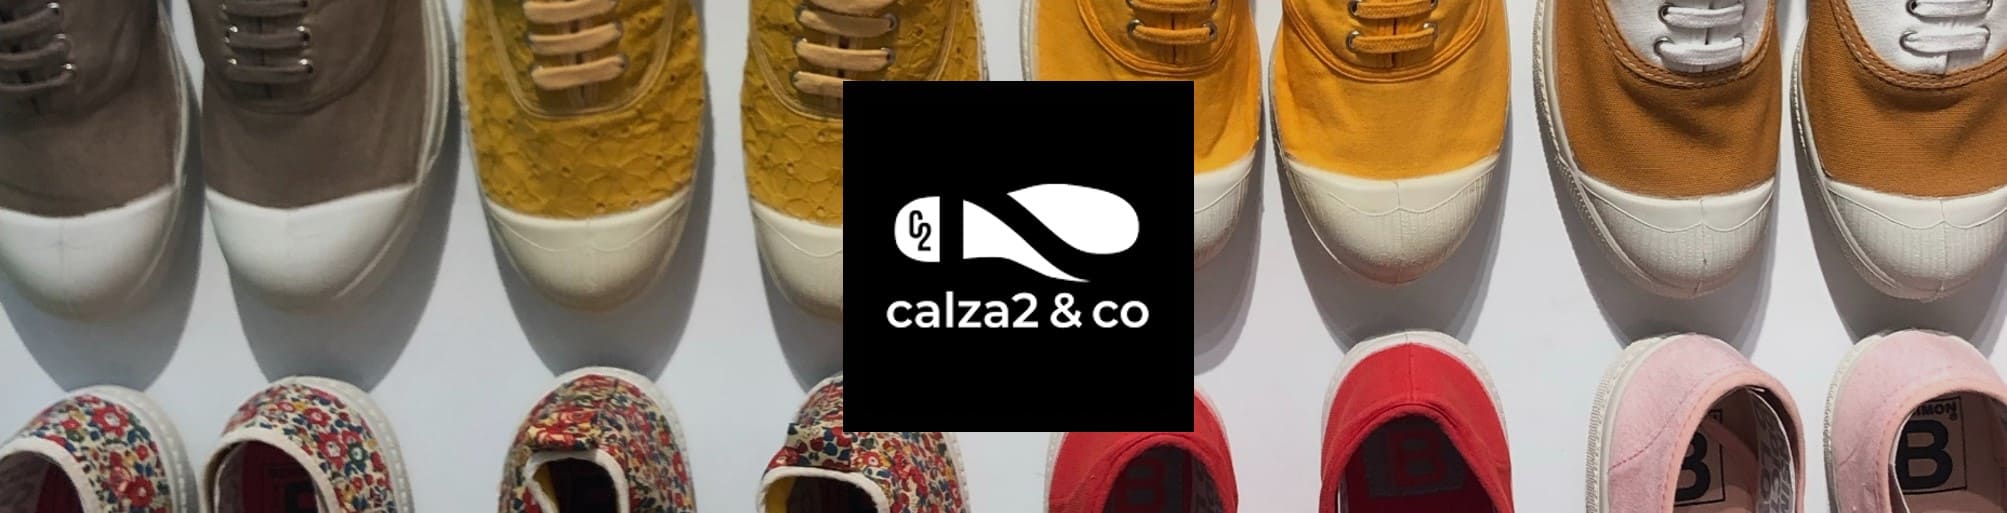 Calza2 & Co